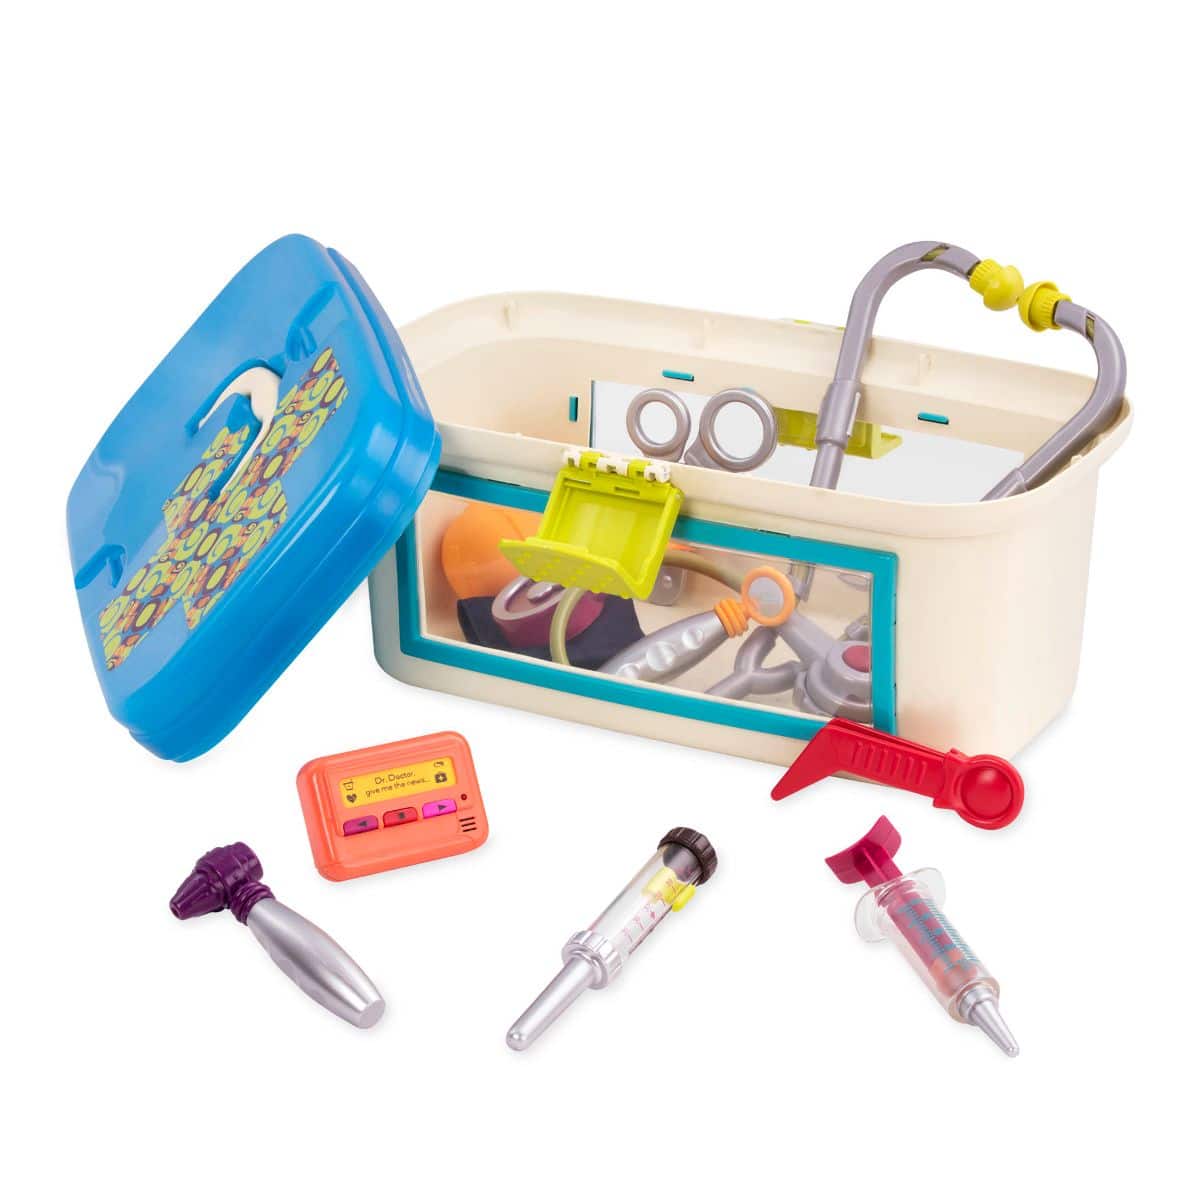 Toy medical kit